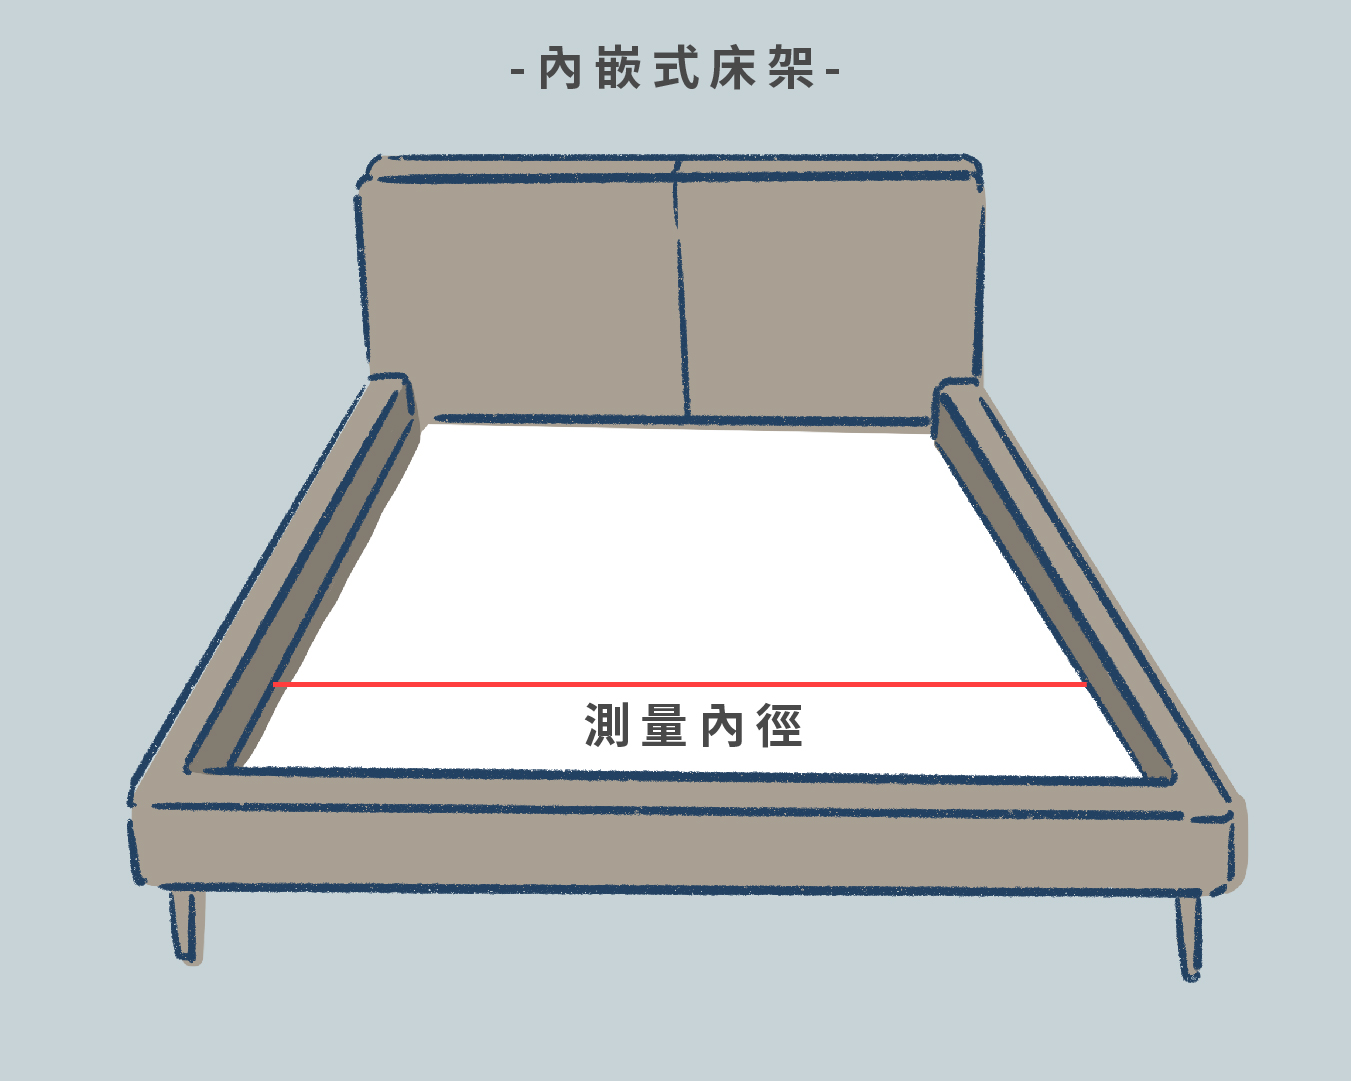 內嵌式床架的測量方式就要特別注意了！需測量床框的「內徑」，量出來的數值才是正確該挑選的床墊尺寸